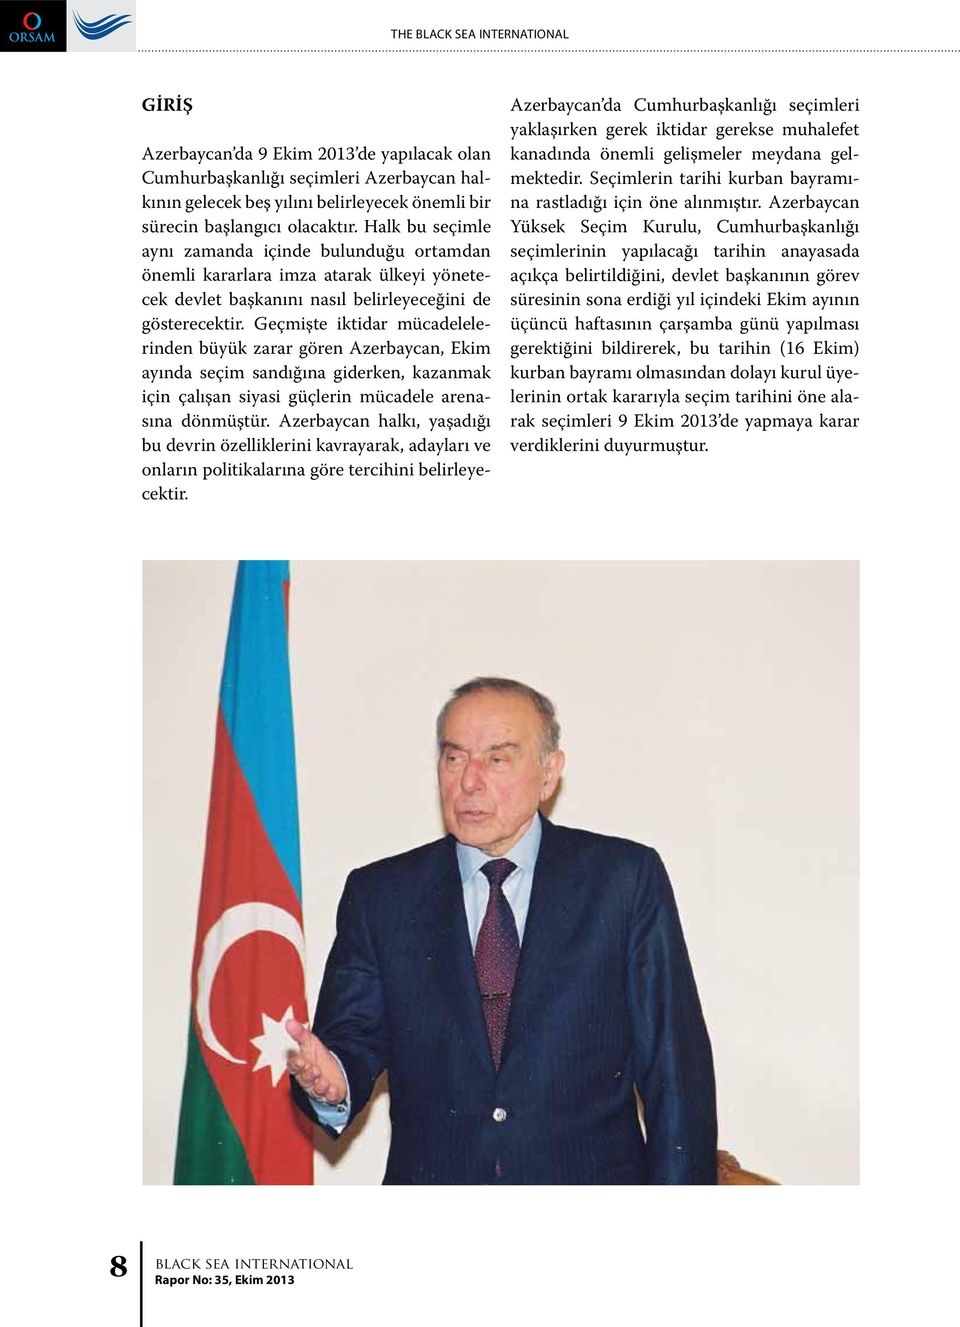 Geçmişte iktidar mücadelelerinden büyük zarar gören Azerbaycan, Ekim ayında seçim sandığına giderken, kazanmak için çalışan siyasi güçlerin mücadele arenasına dönmüştür.